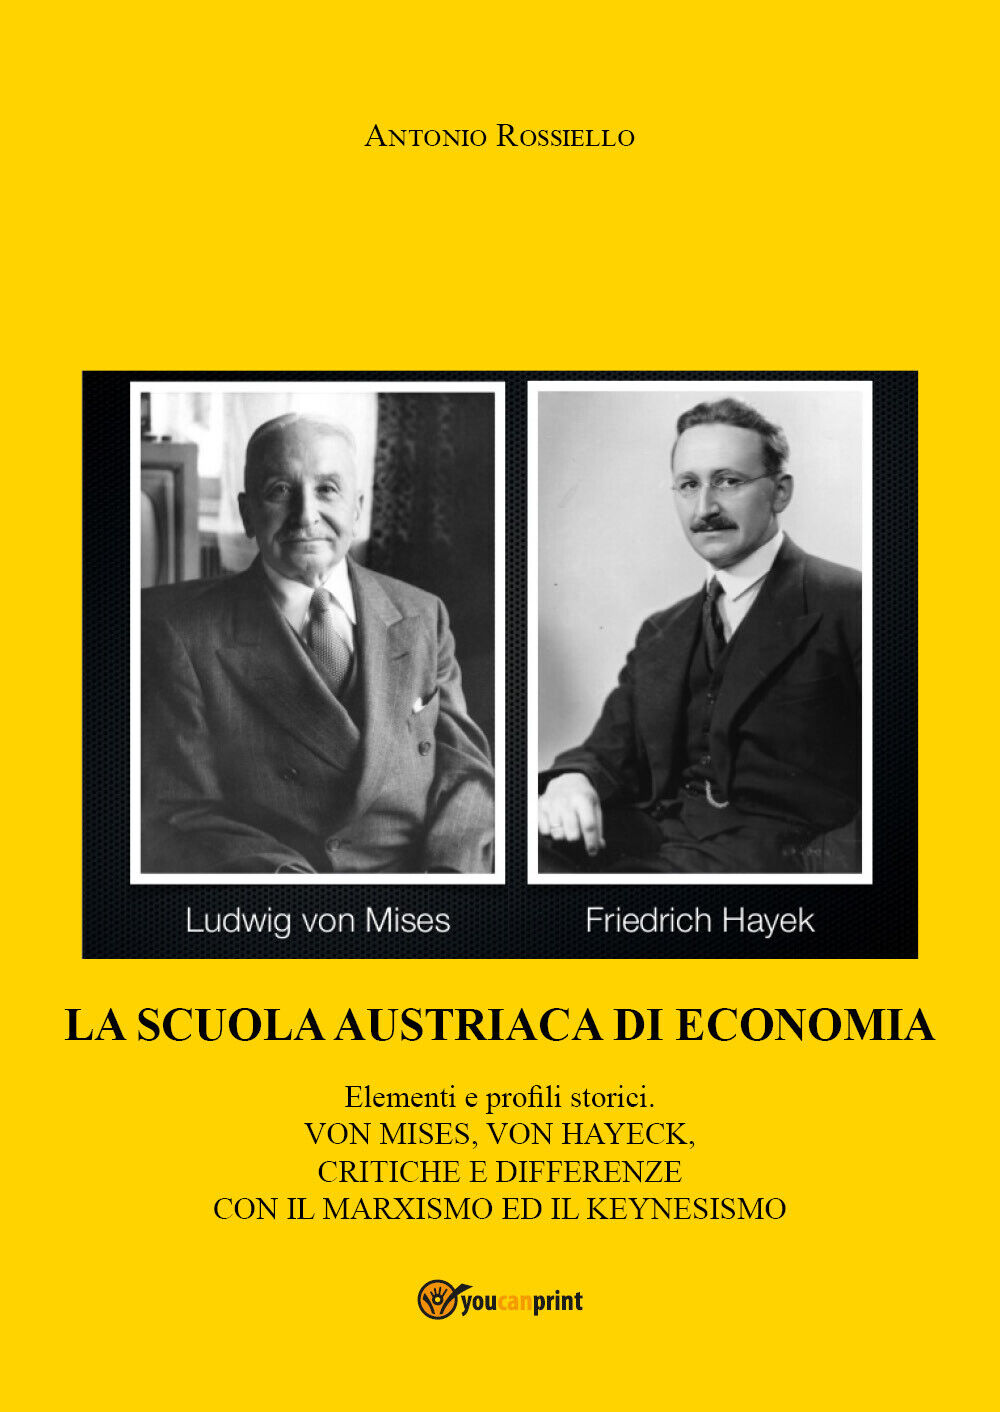 La scuola austriaca di economia: elementi e profili storici di Antonio Rossiello libro usato